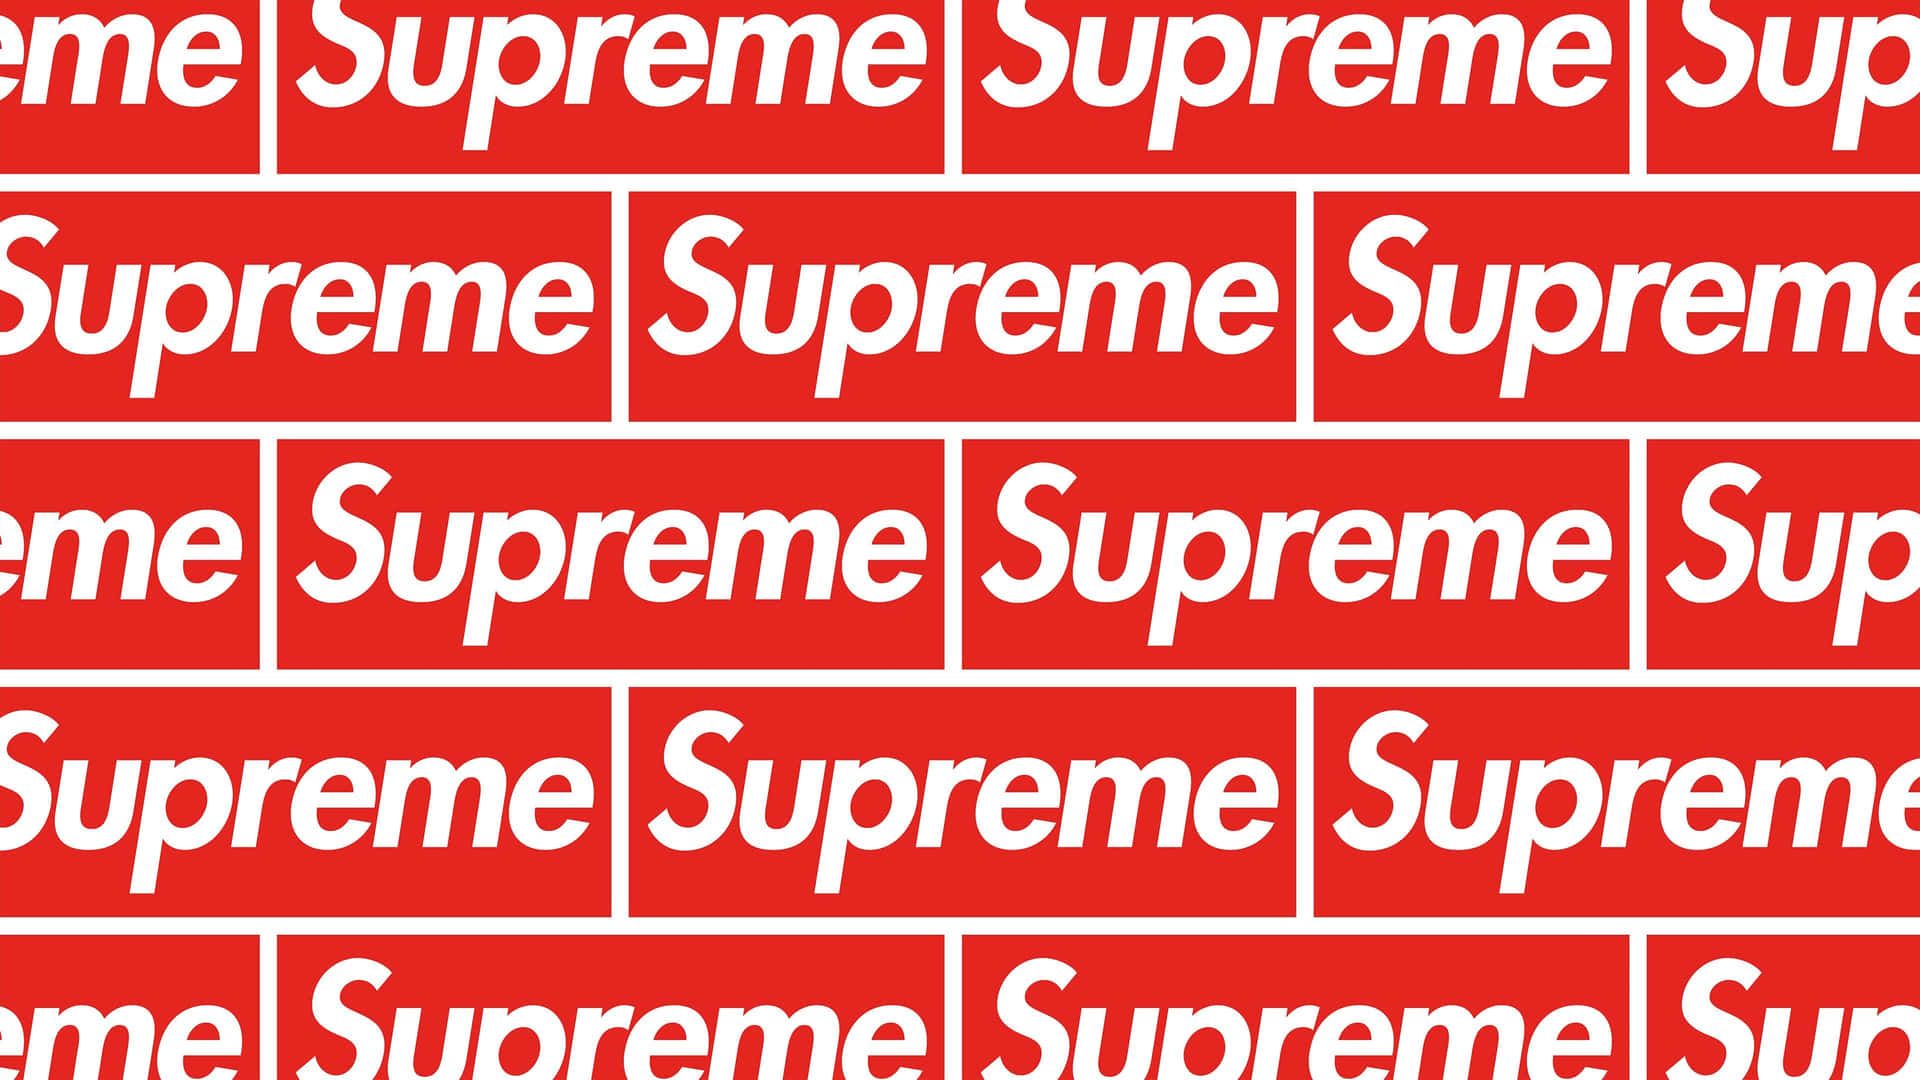 Supreme logo pattern - Supreme